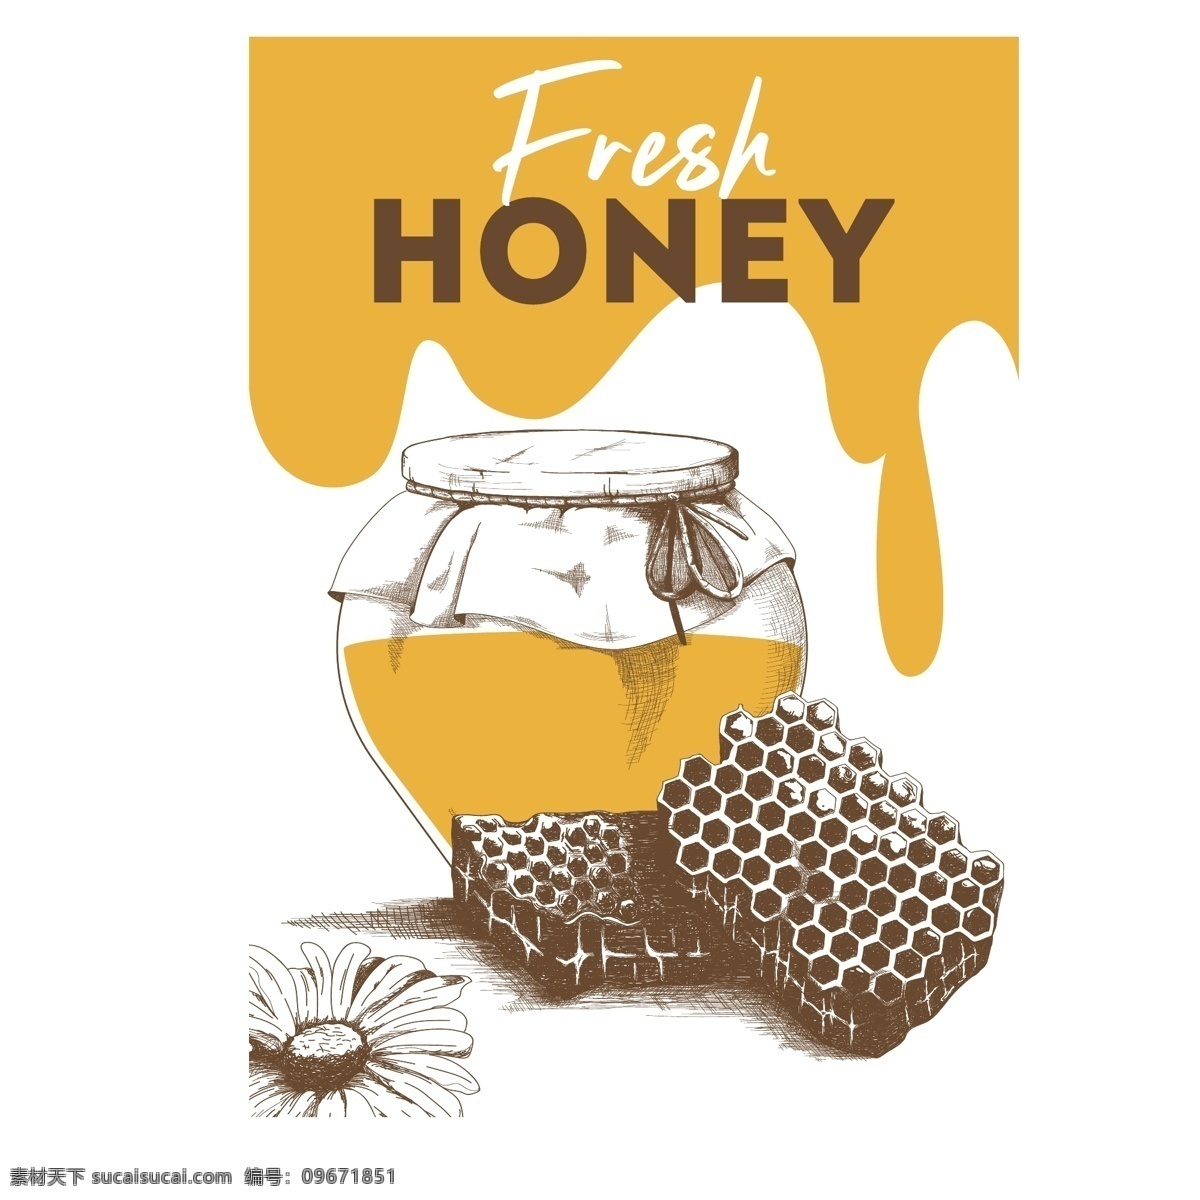 蜂蜜海报 蜂蜜 野生蜂蜜 蜂蜜百香果 蜂蜜展板 蜂蜜广告 蜂胶 天然蜂蜜 自然蜂蜜 蜂蜜宣单 蜂蜜画册 蜂蜜模板 蜂蜜制作 蜂蜜工艺 蜂蜜包装 蜂蜜展架 绿色蜂蜜 蜂蜜插画 蜂蜜文化 蜂蜜图片 蜂蜜养殖 蜂蜜设计 蜂蜜产品 蜂蜜礼品盒 蜂蜜外盒包装 蜂蜜制作工艺 蜂蜜素材 蜜蜂 蜜蜂养殖 美食海报专区